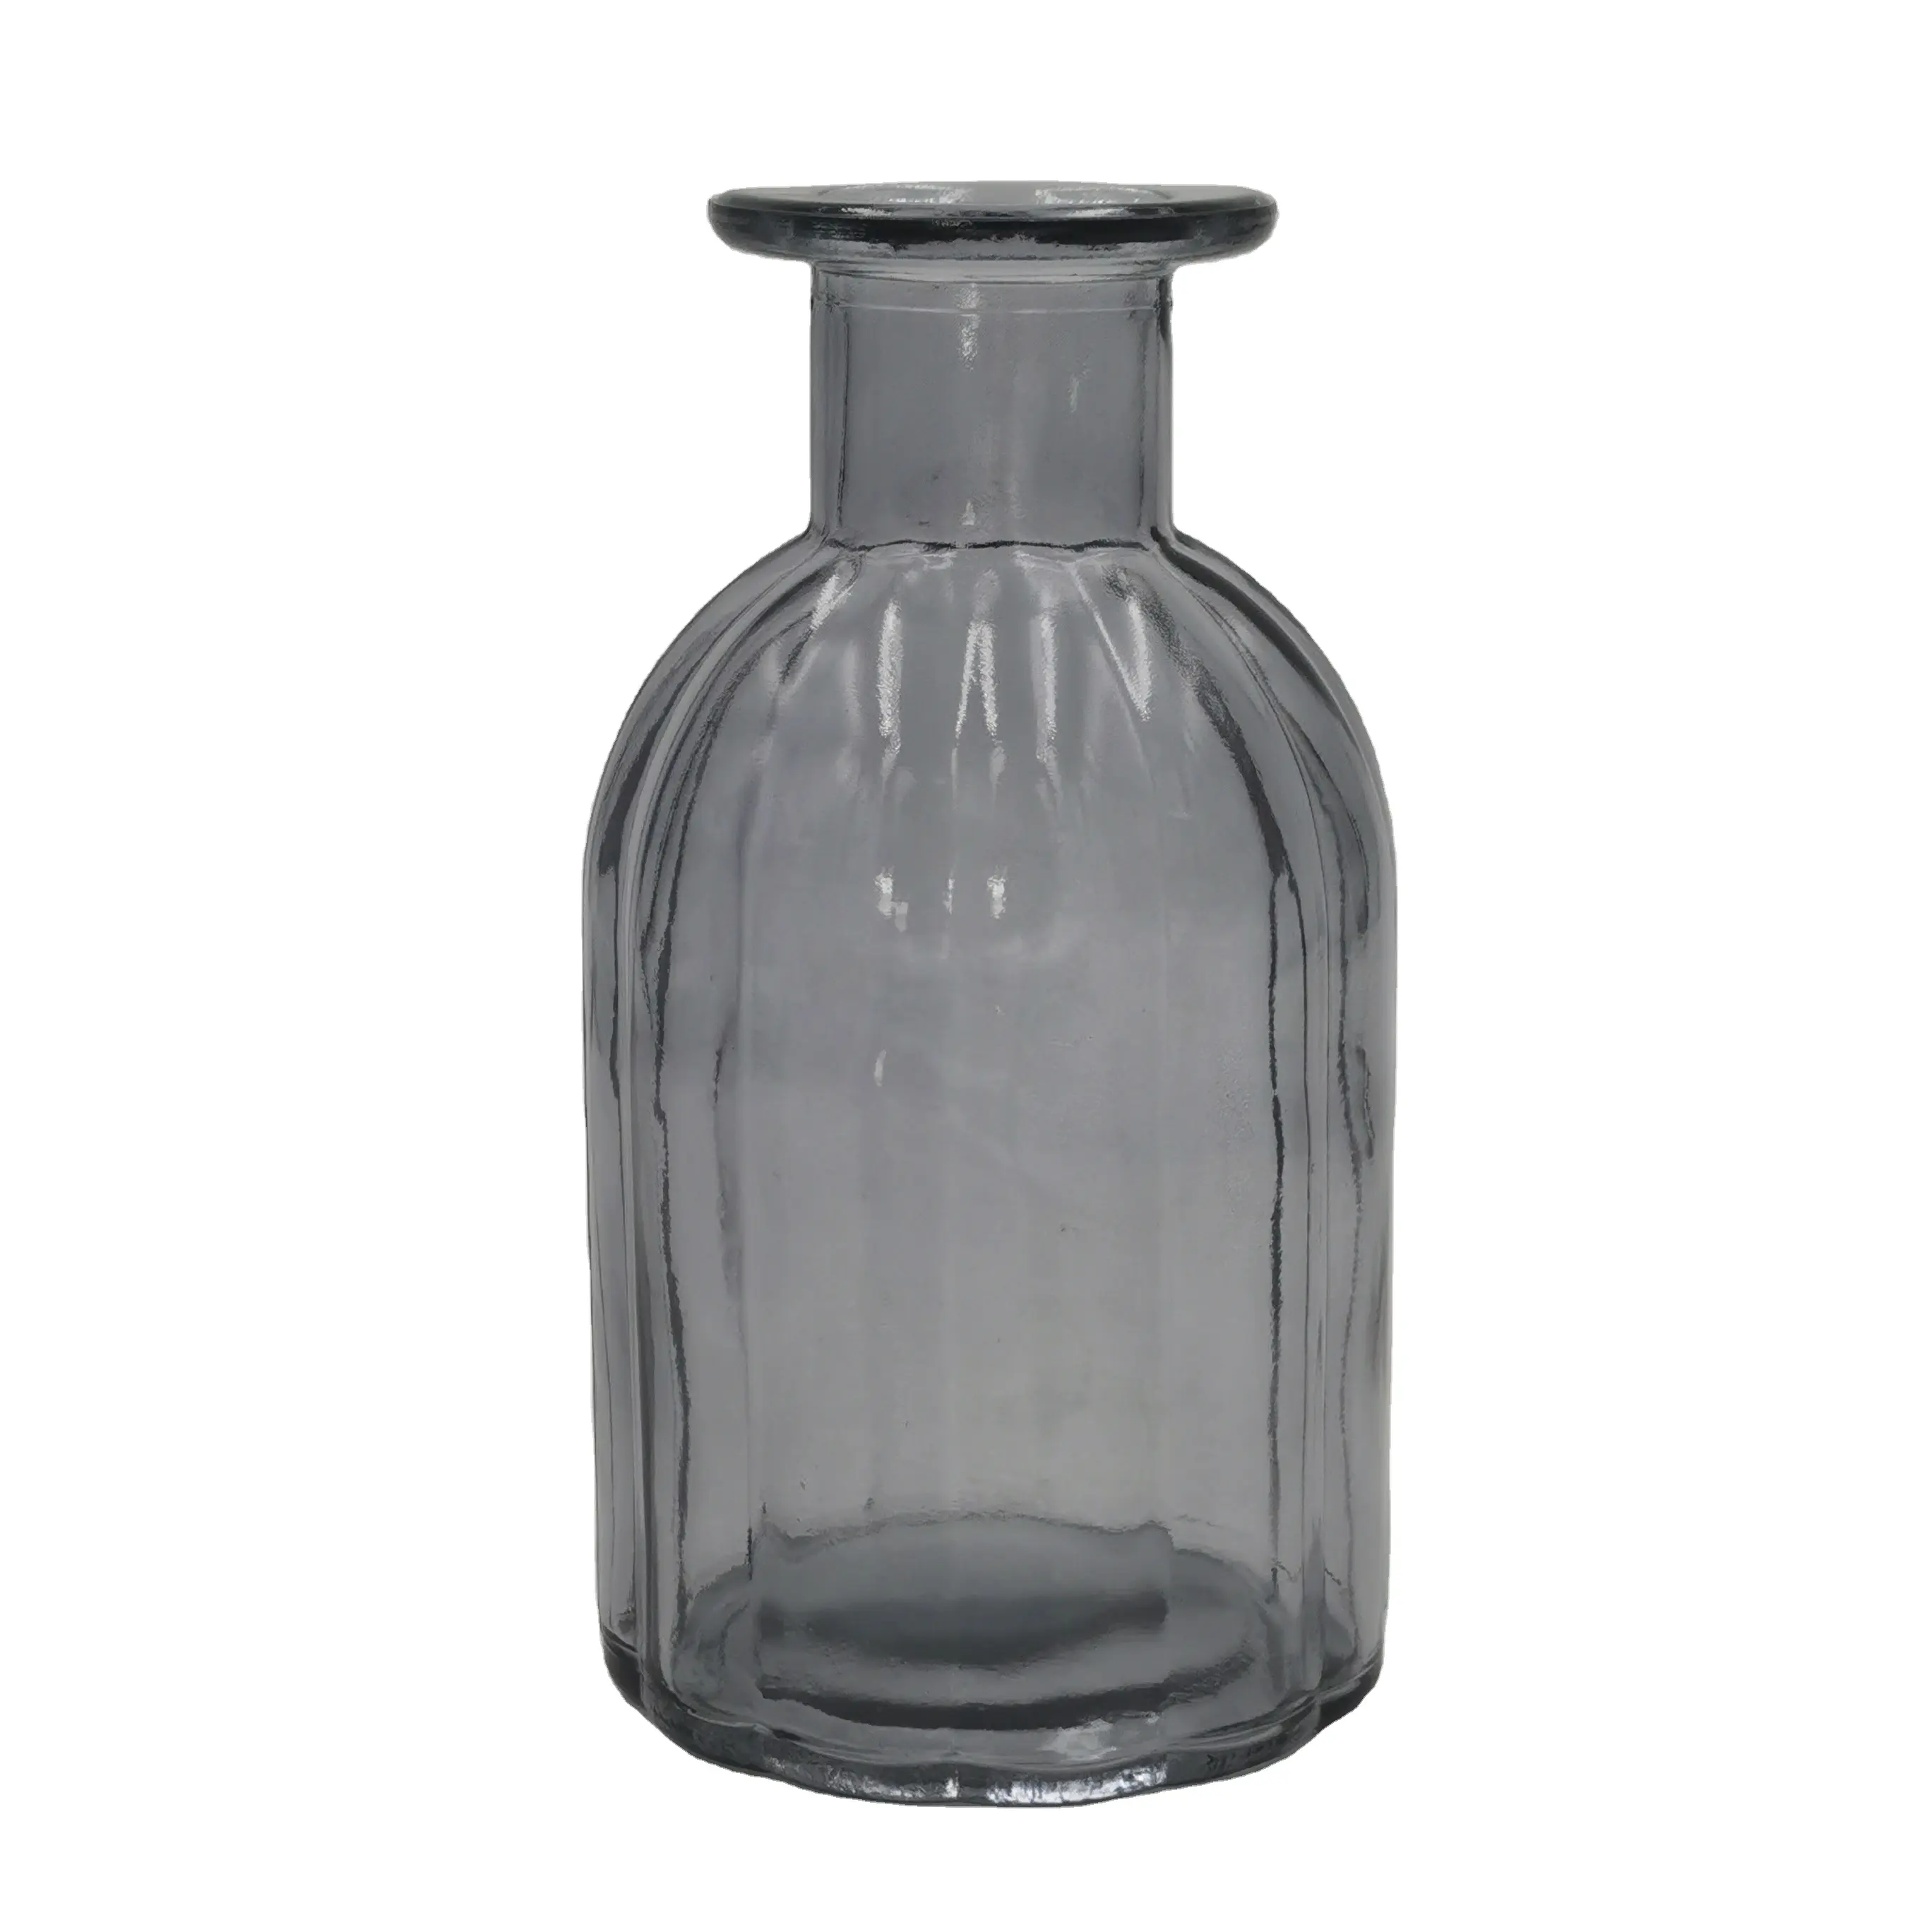 150ml 250ml reed stripe design glass diffuser bottle for room freshener